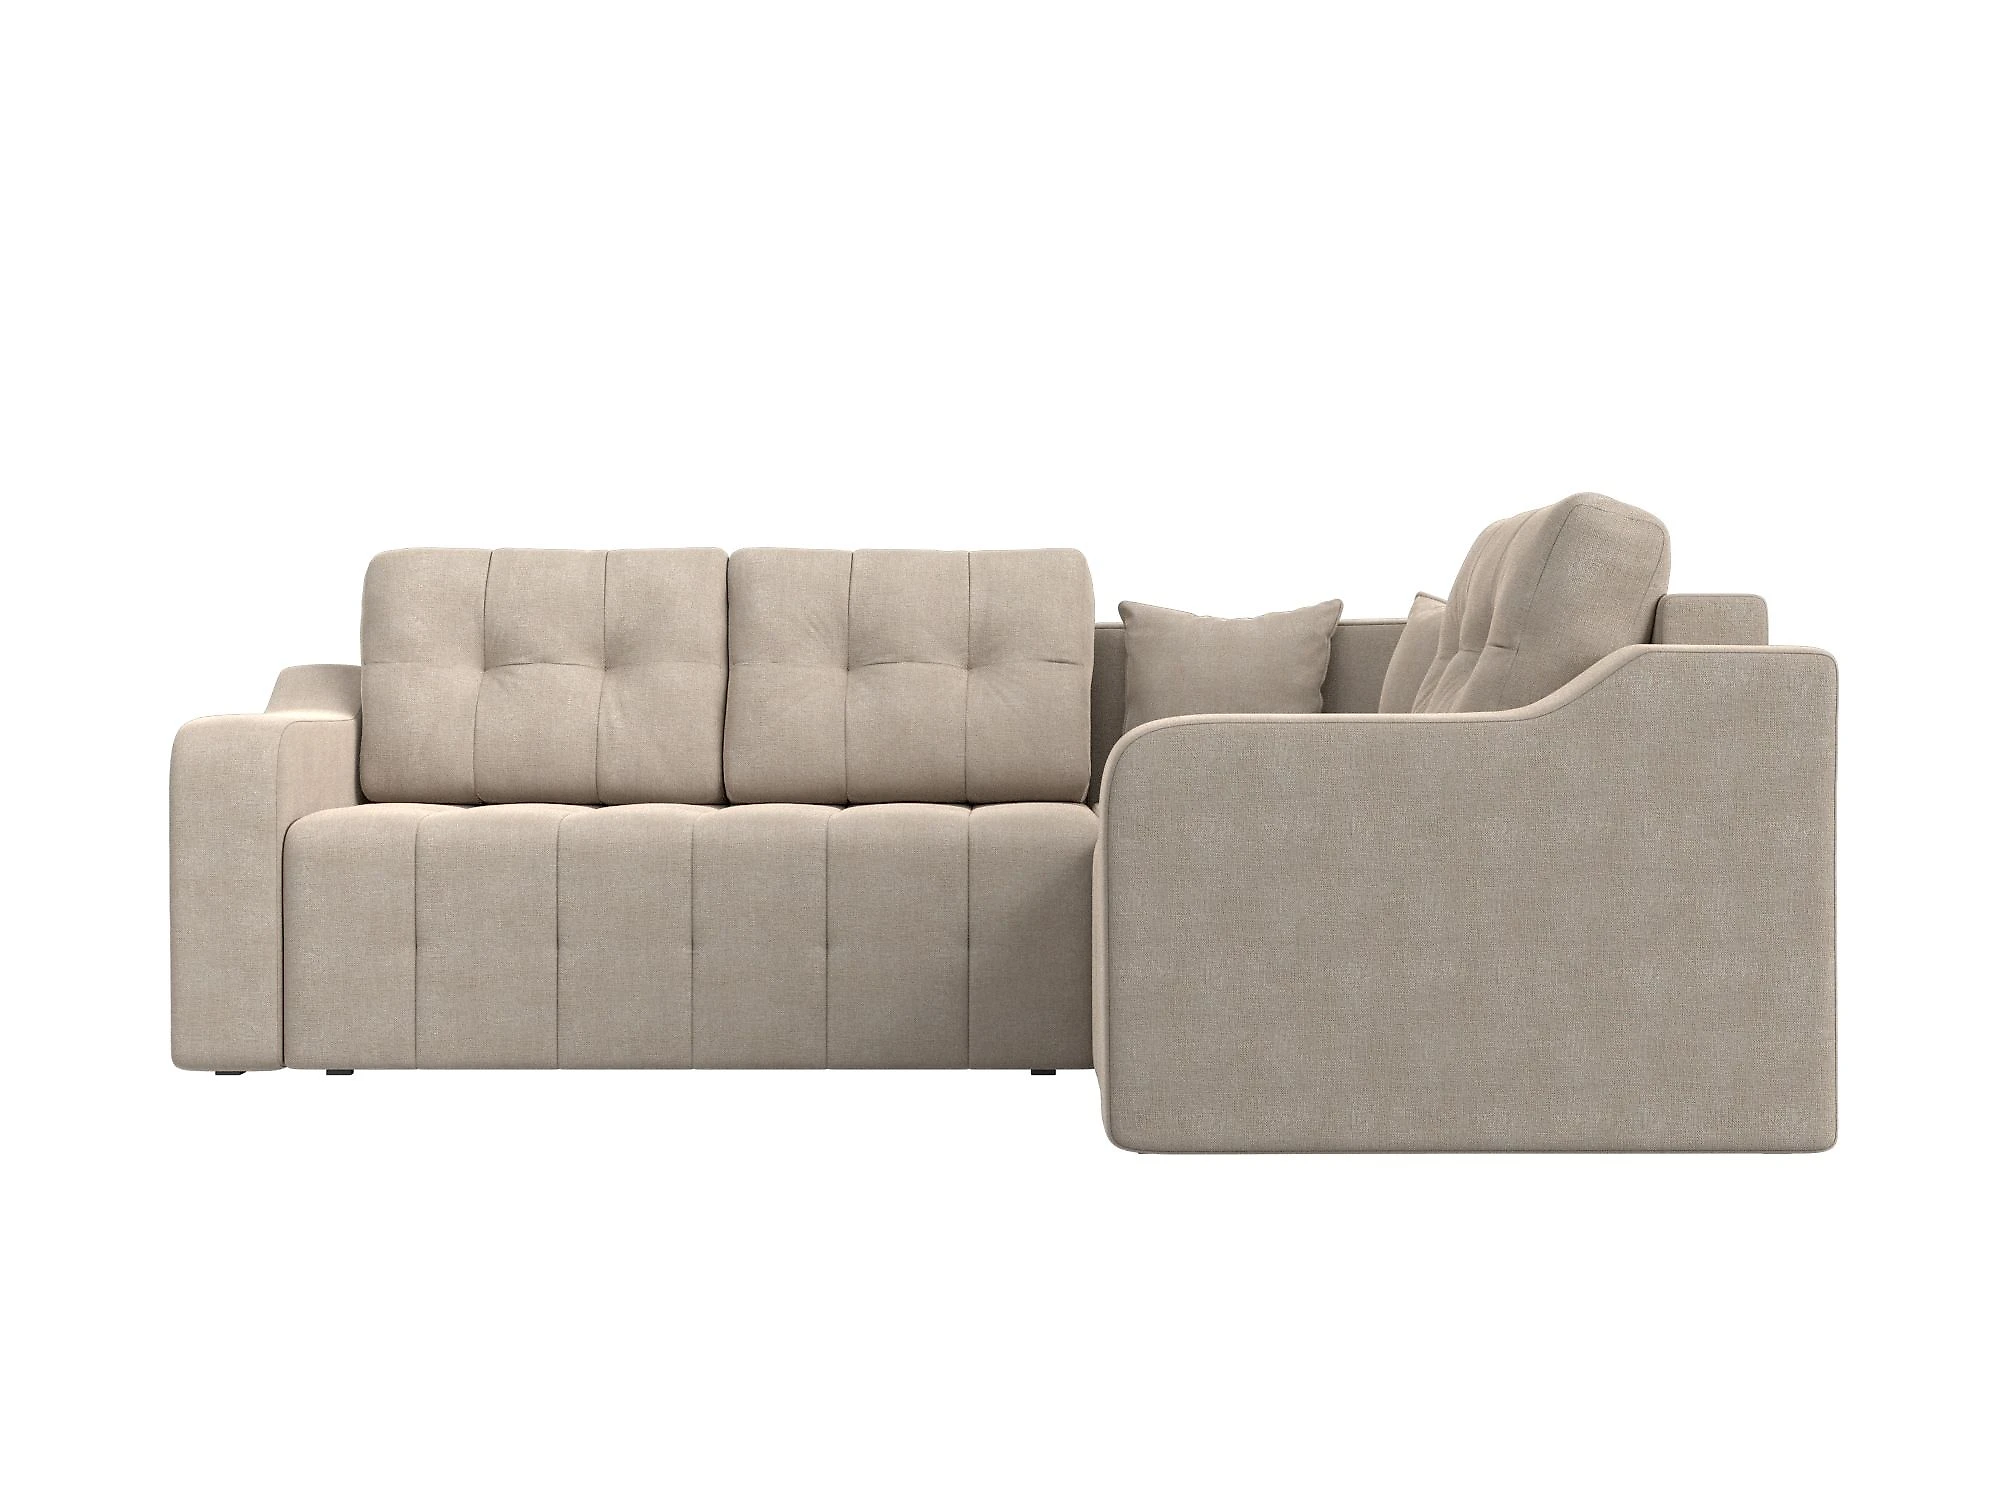  угловой диван из рогожки Кембридж Кантри Дизайн 1